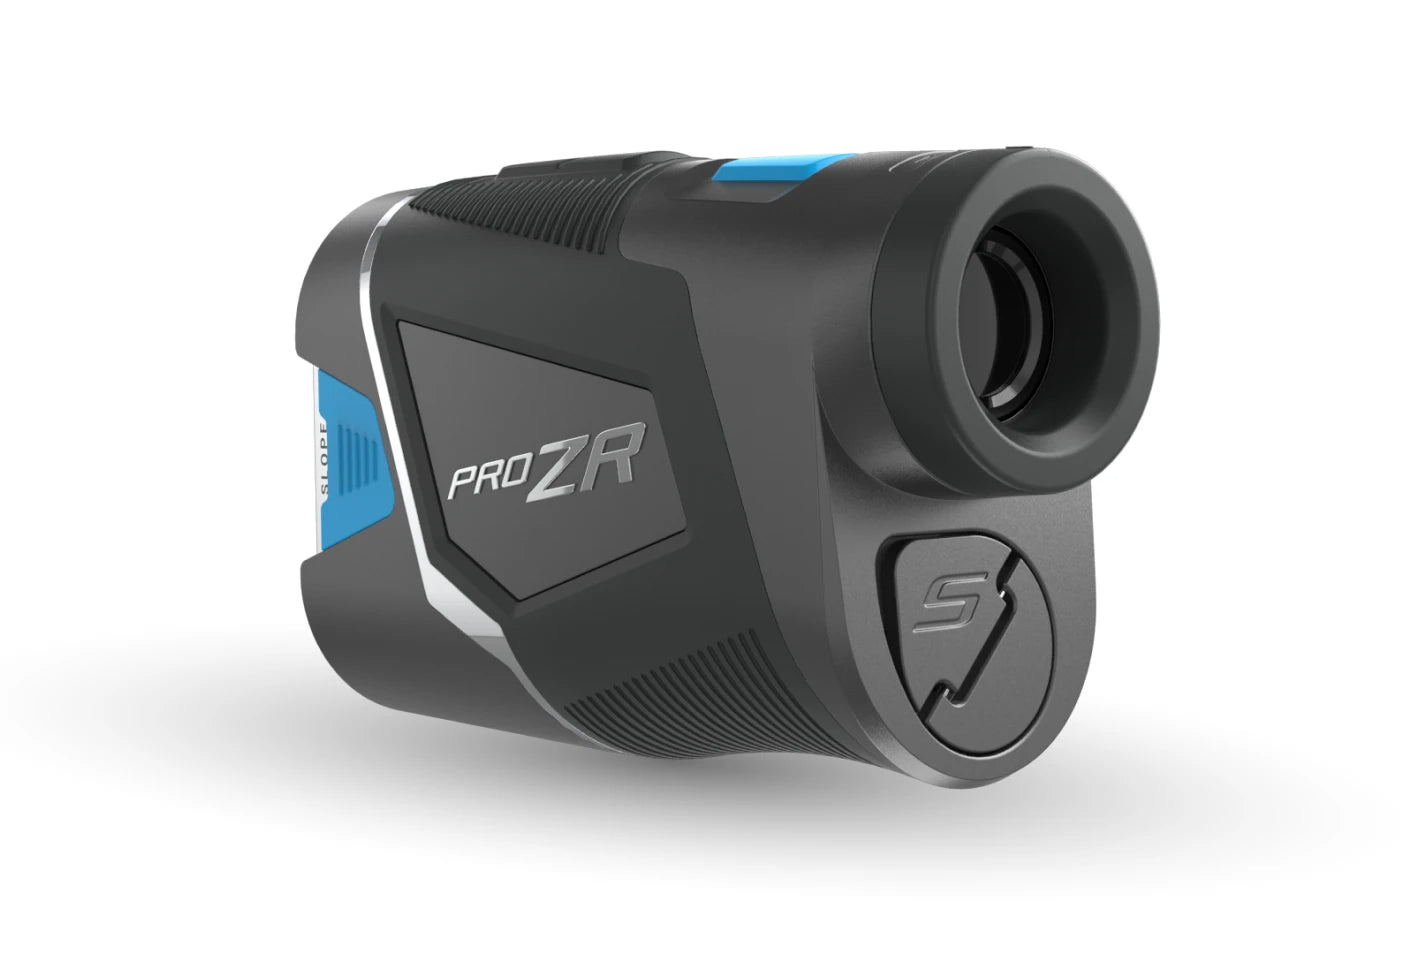 Shot Scope PRO ZR Laser Rangefinder